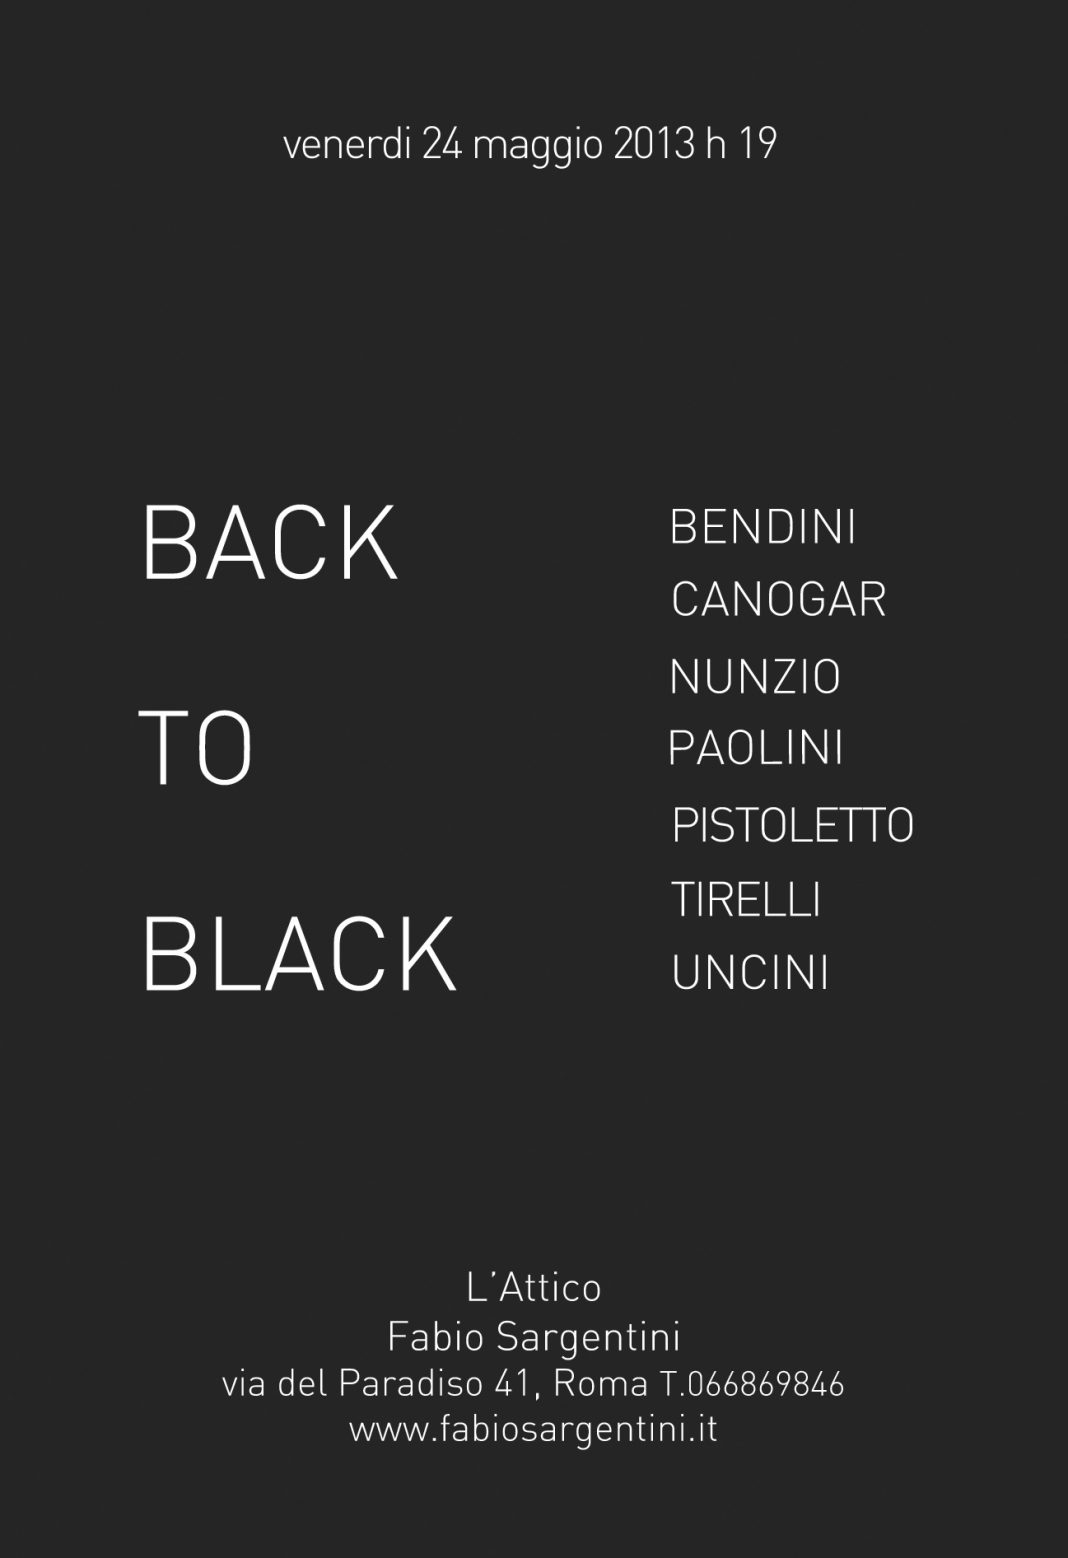 Back to black / Ritorno al nerohttps://www.exibart.com/repository/media/eventi/2013/05/back-to-black-ritorno-al-nero-1068x1558.jpg